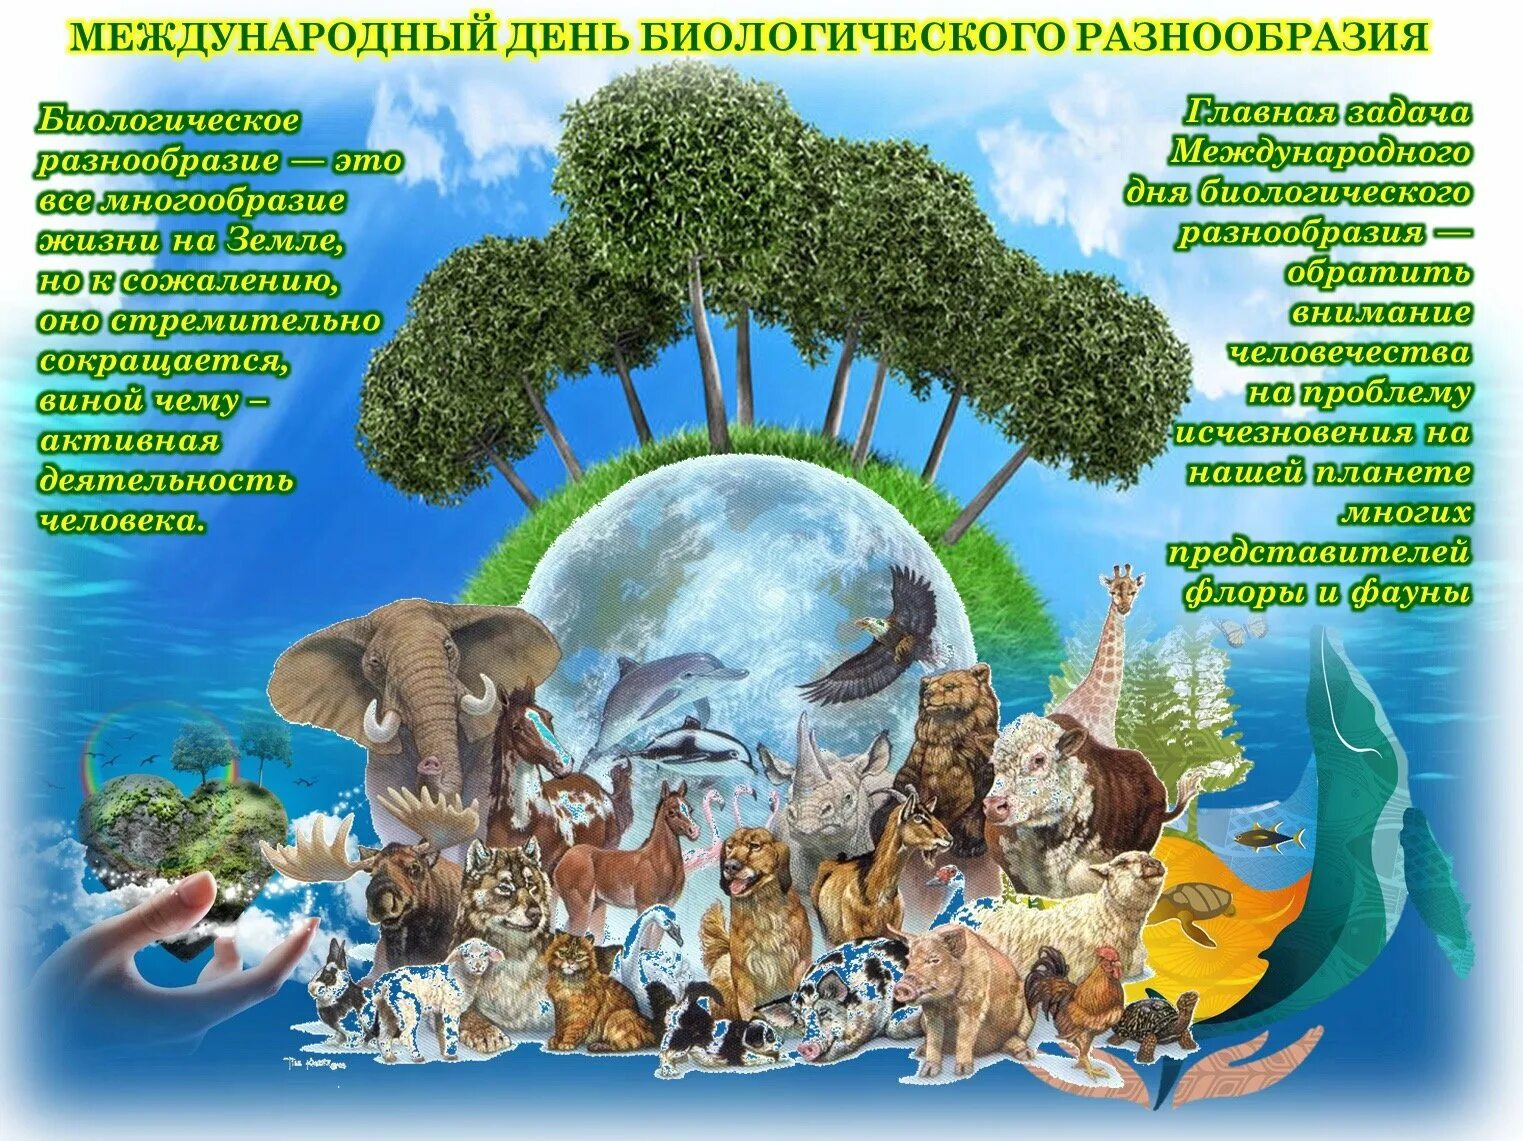 Многообразие окружающей среды. День биологического разнообразия. Международный день биоразнообразия. День сохранения биологического разнообразия. Всемирный день биологического разнообразия.